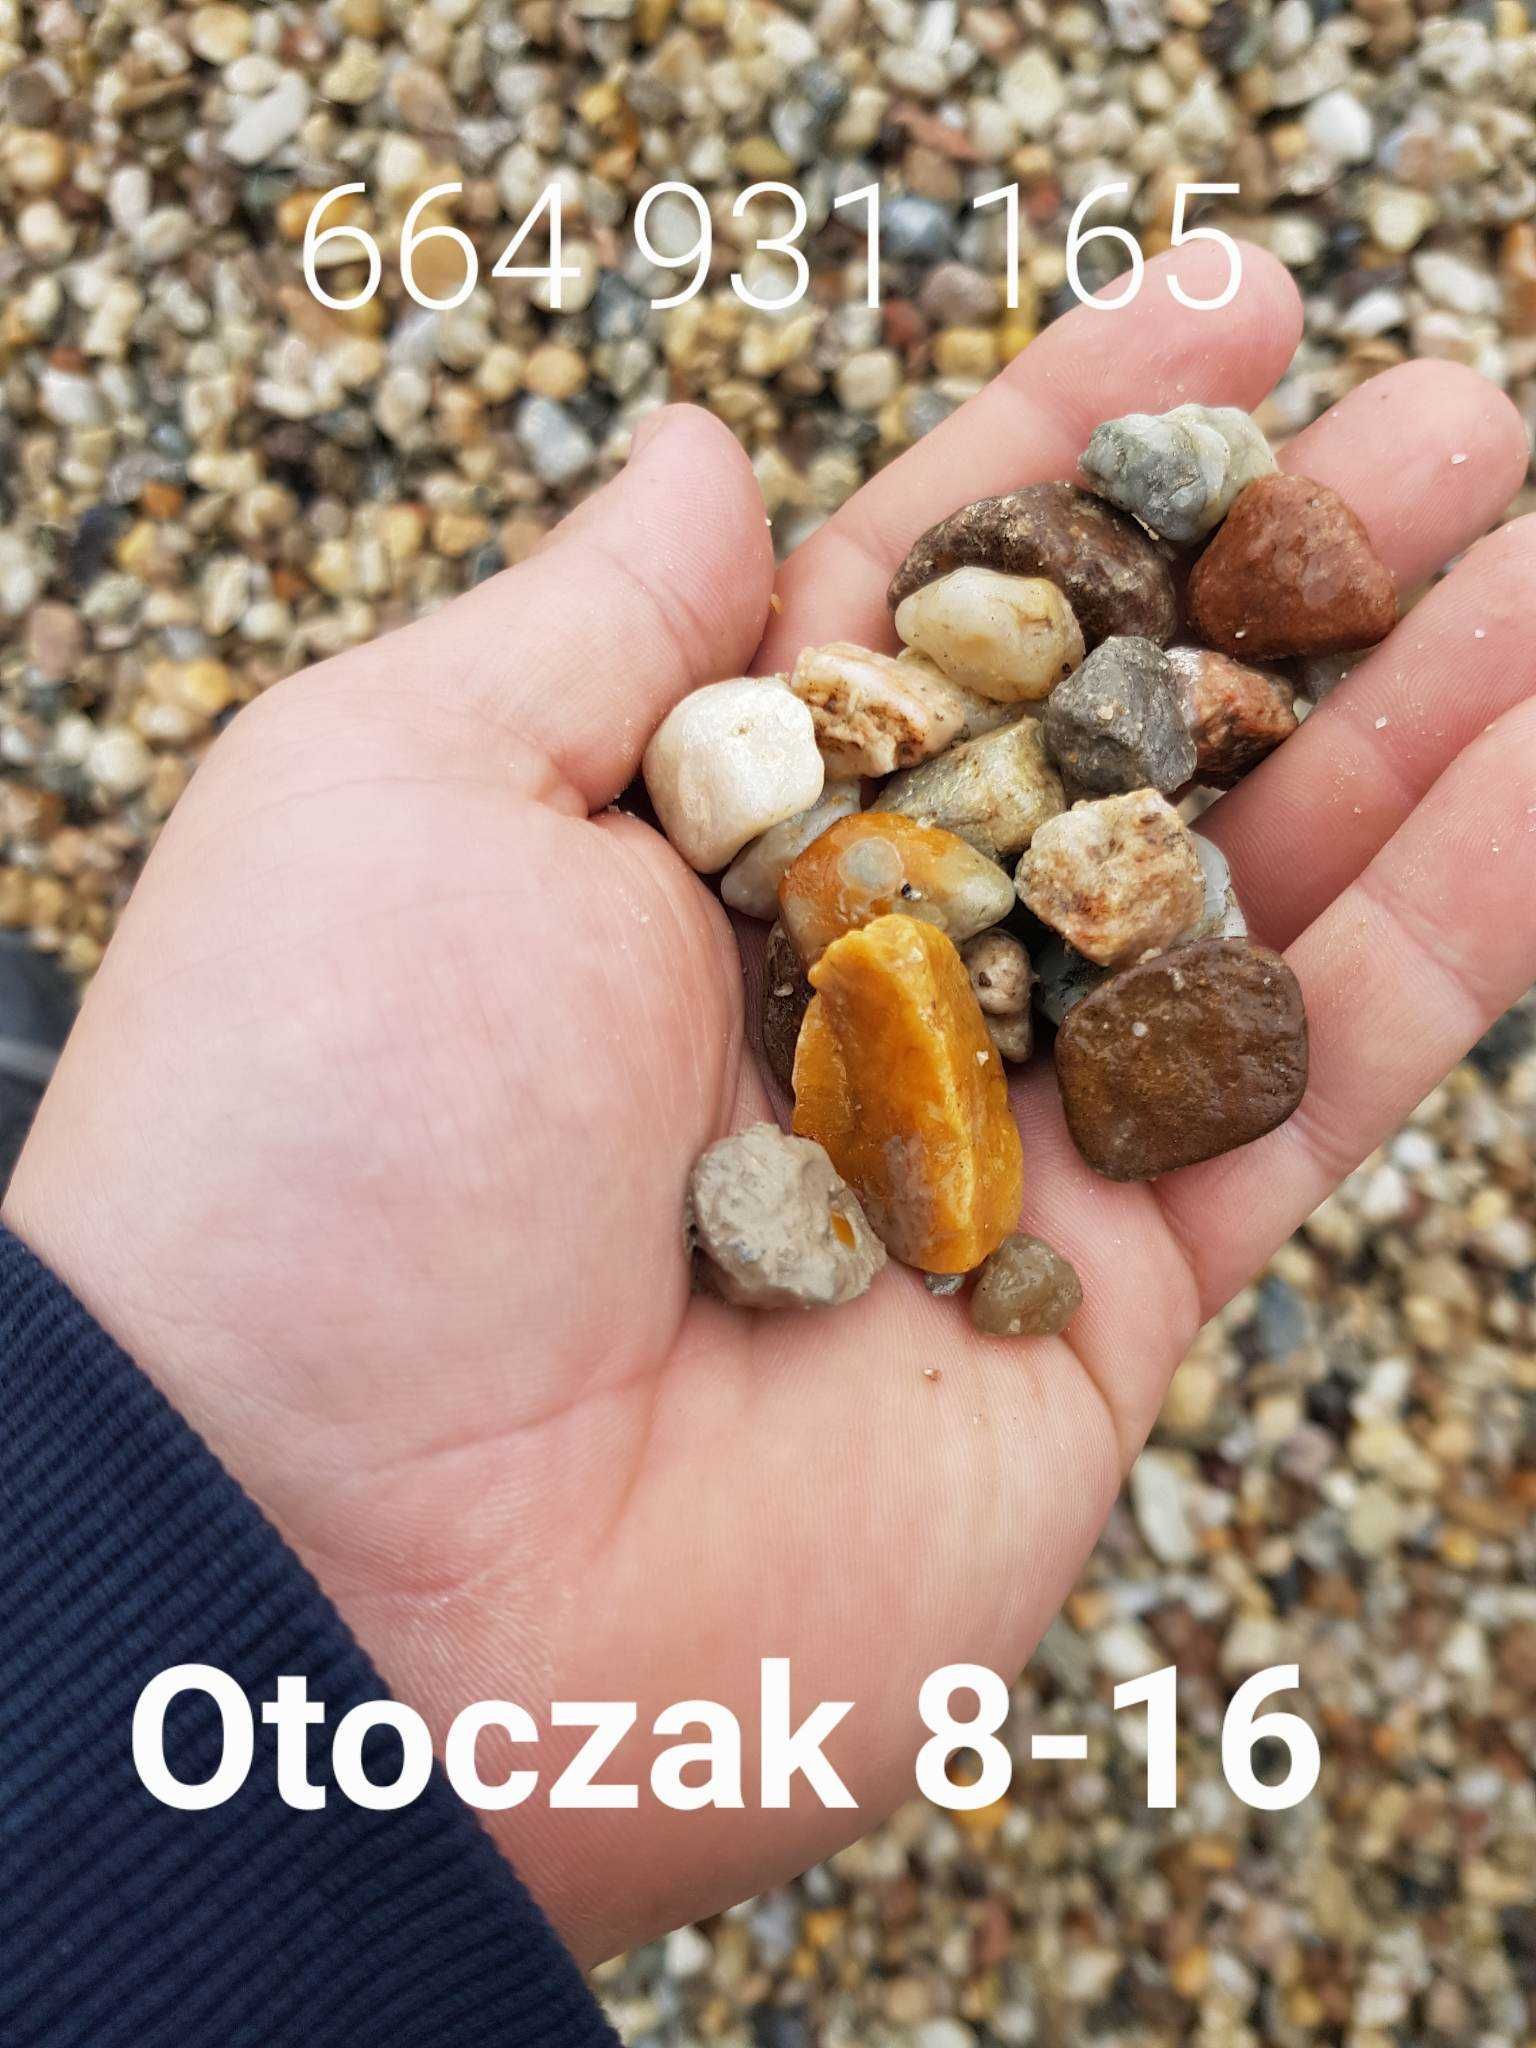 otoczak 8-16 żwir 16-32 płukany granit grys bazalt piasek dolomit